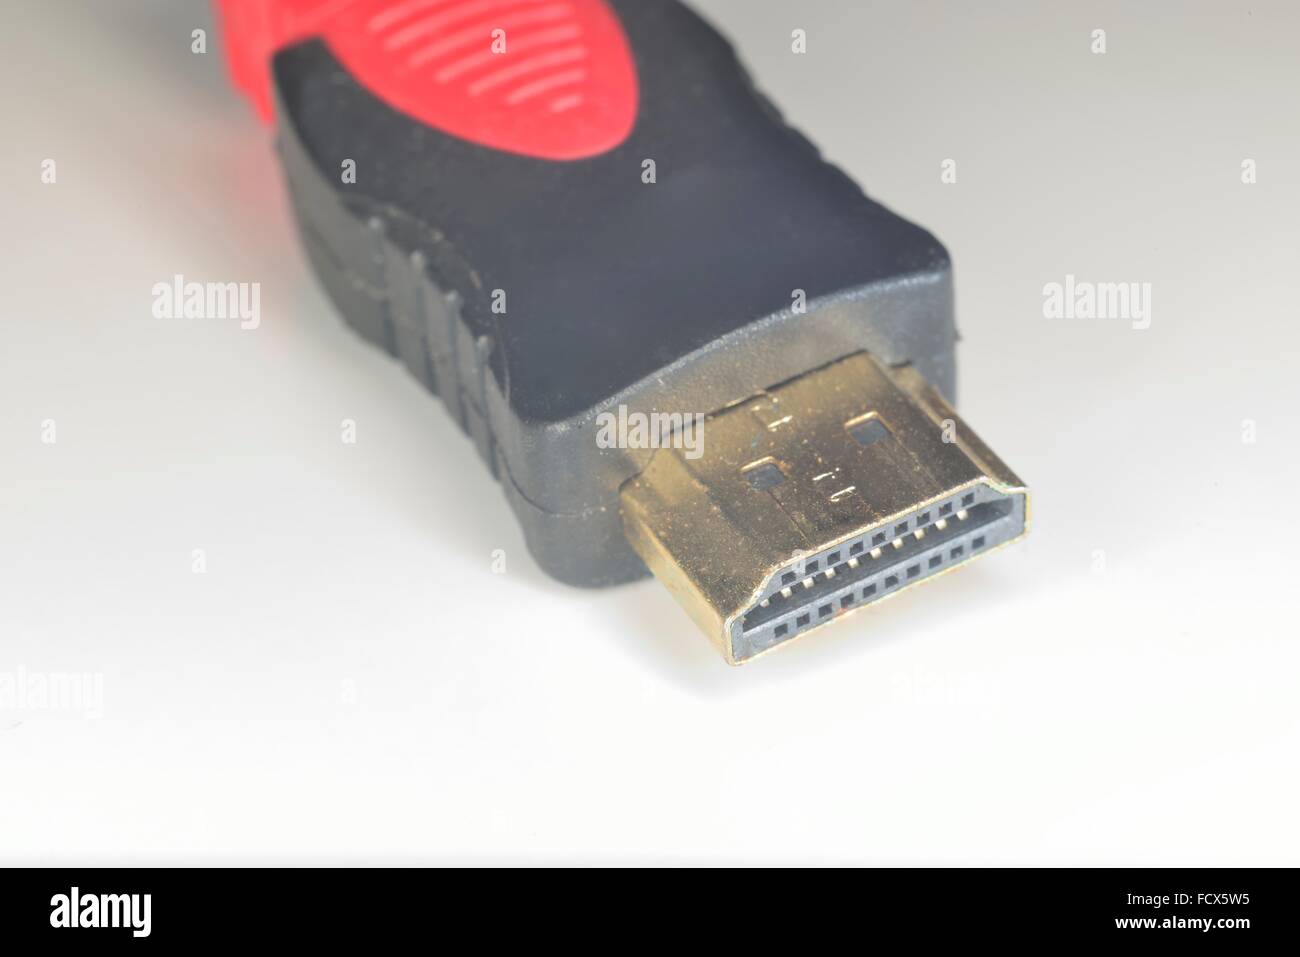 Hdmi di tipo A il connettore con i pin di collegamento TV, monitor, display o il dispositivo audio Foto Stock